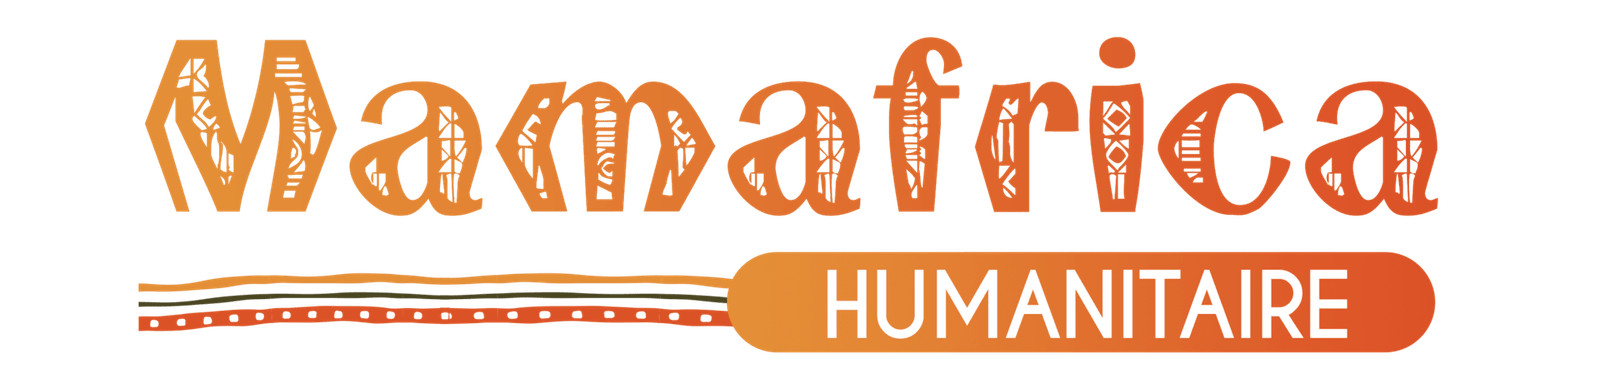 Mamafrica humanitaire : La 1ère plateforme de promotion des ONG locales